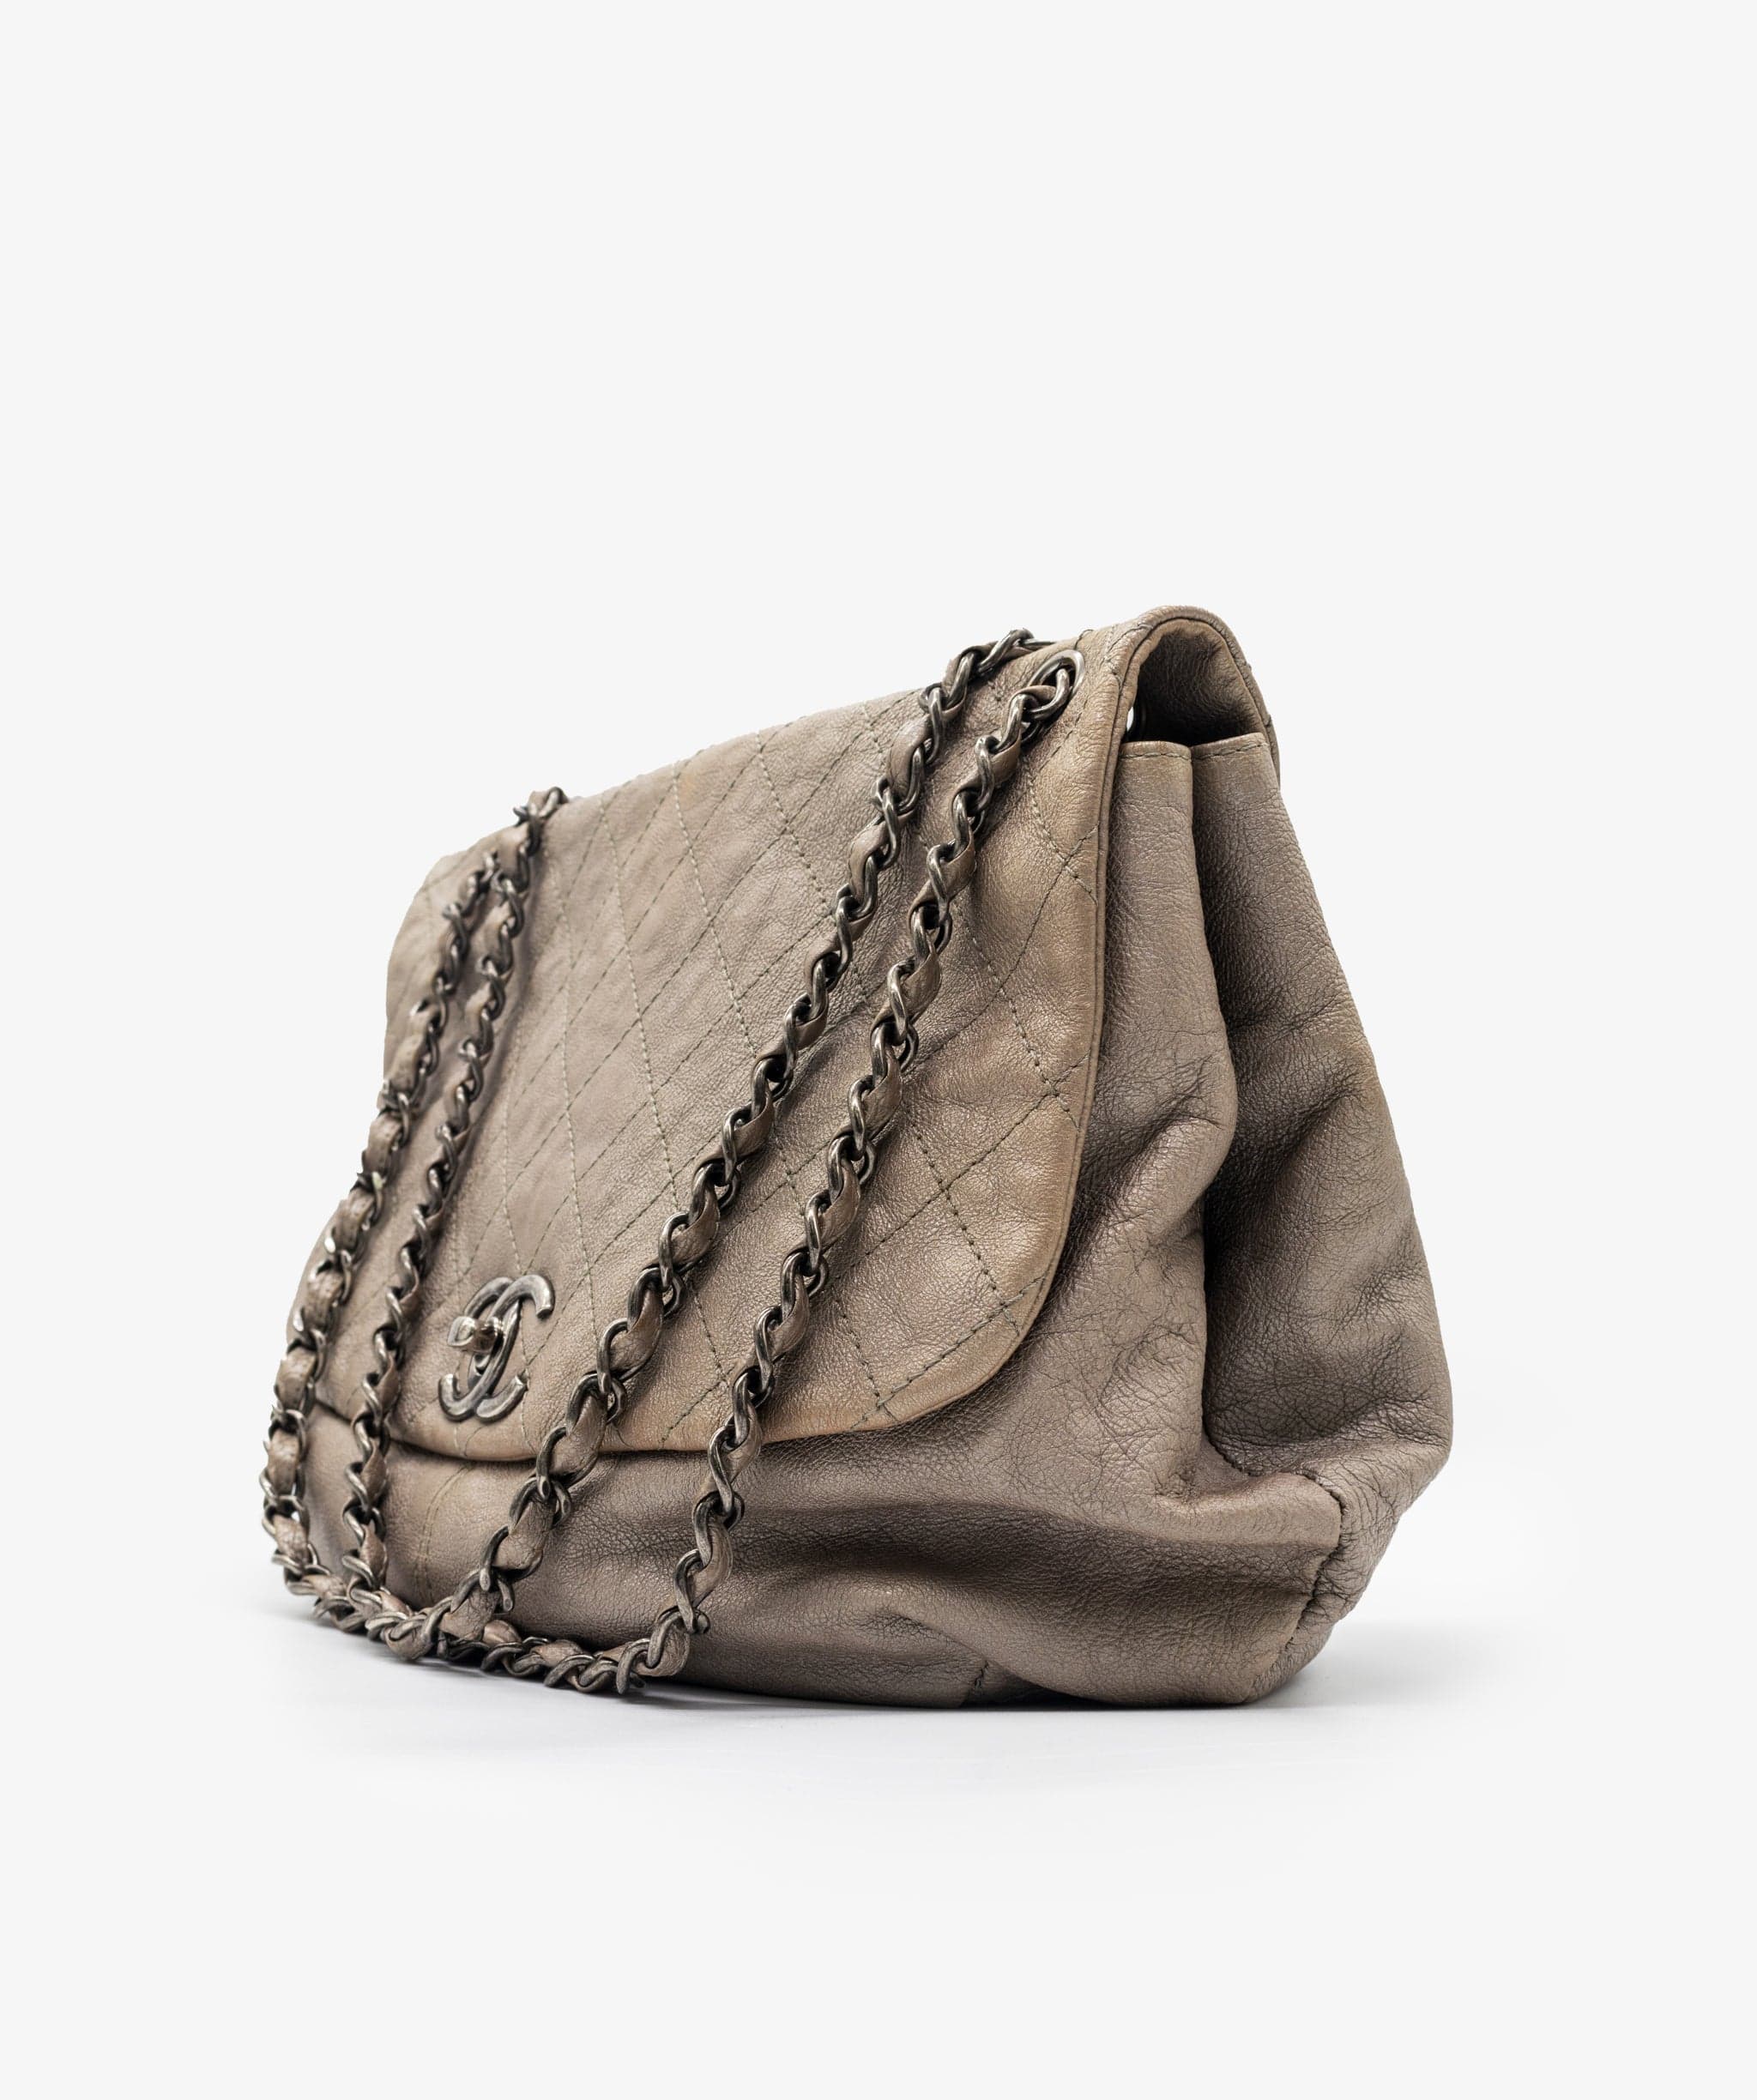 Chanel Chanel Silver Shoulder Bag